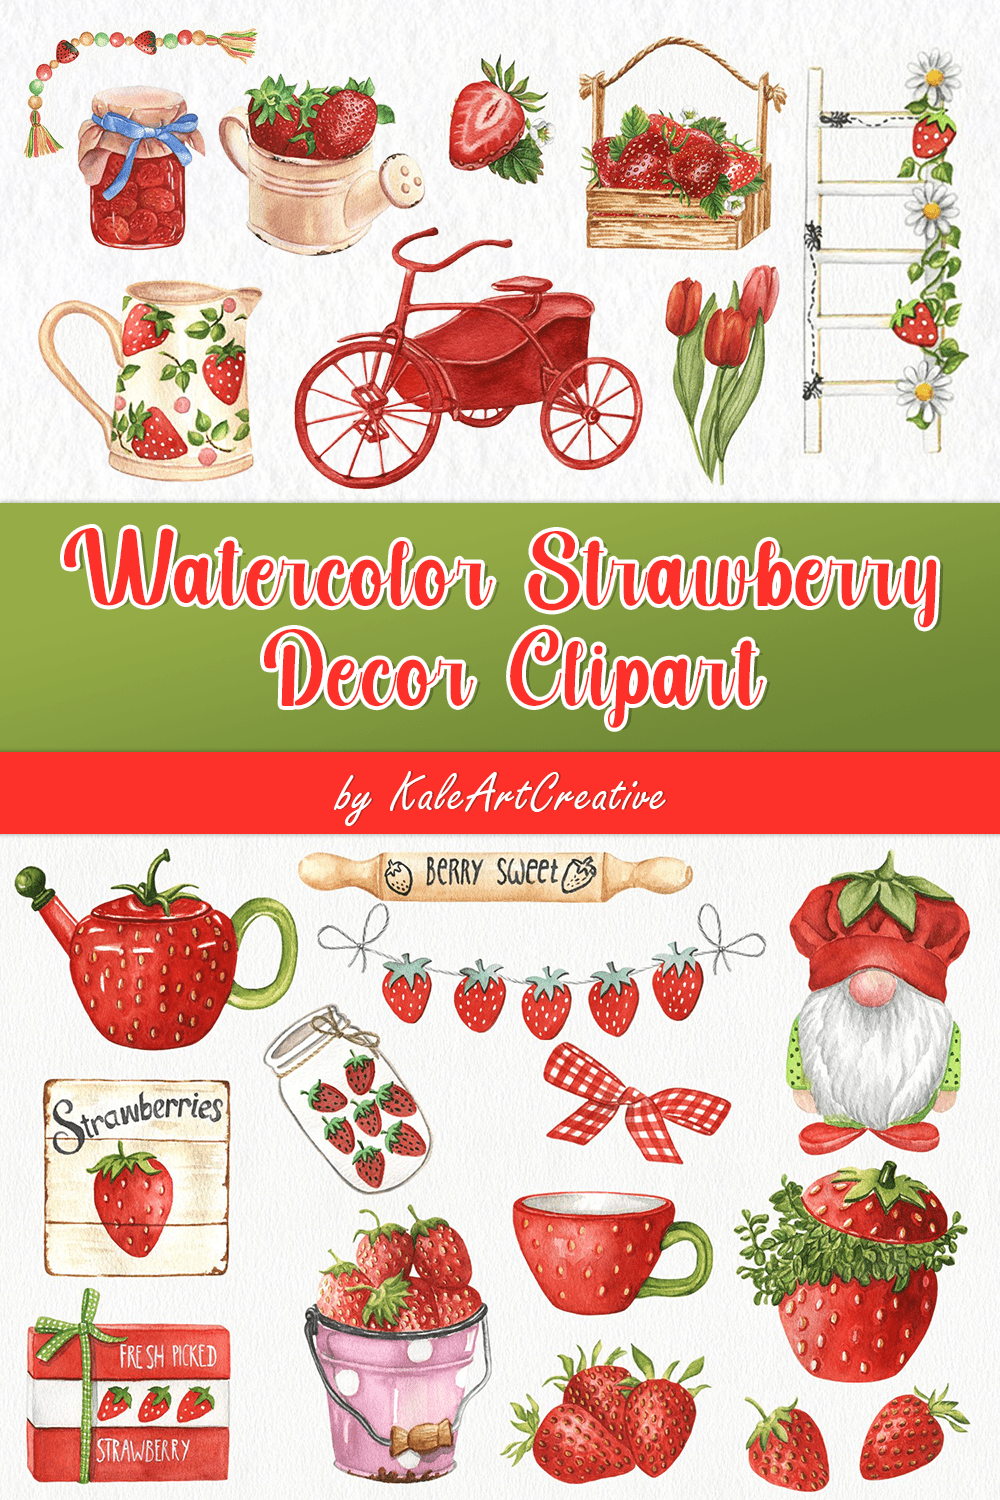 Watercolor Strawberry Decor Clipart. Farmhouse Kitchen Decor - Pinterest.